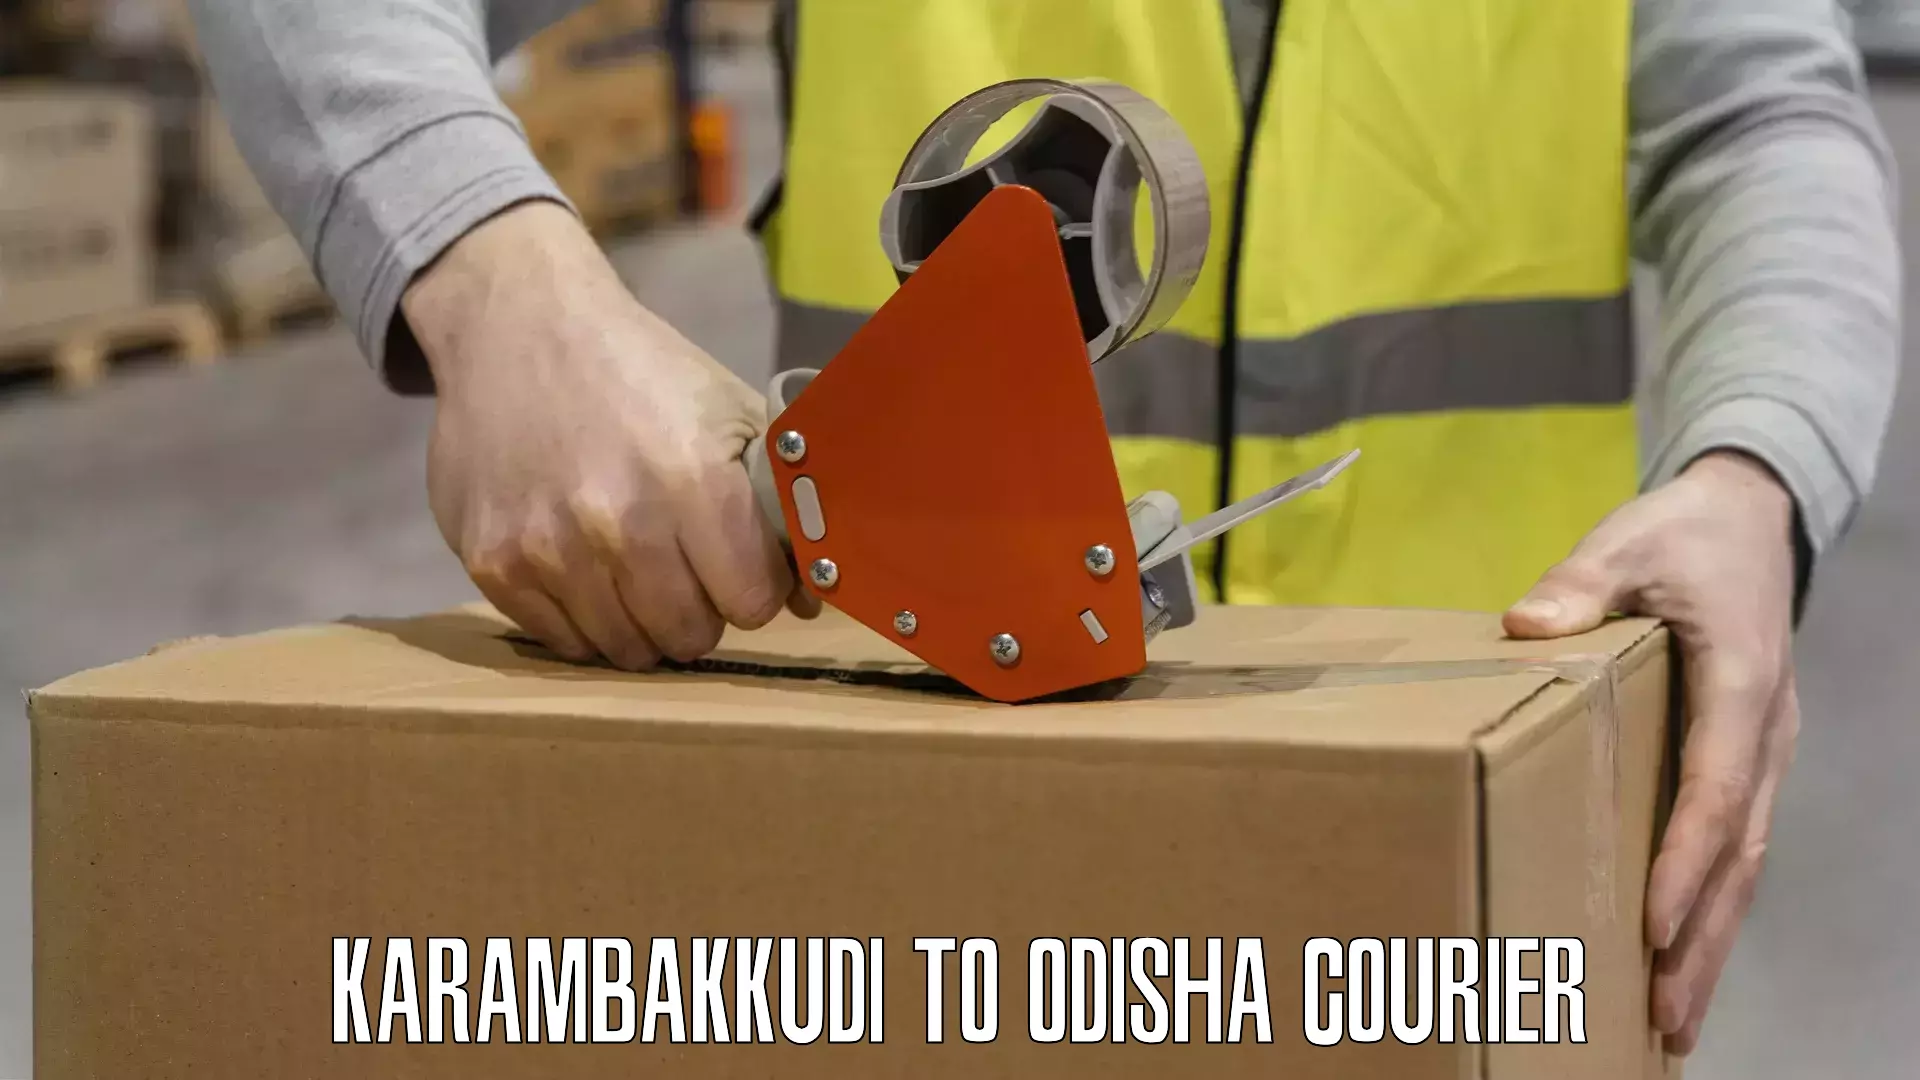 International logistics Karambakkudi to Odisha